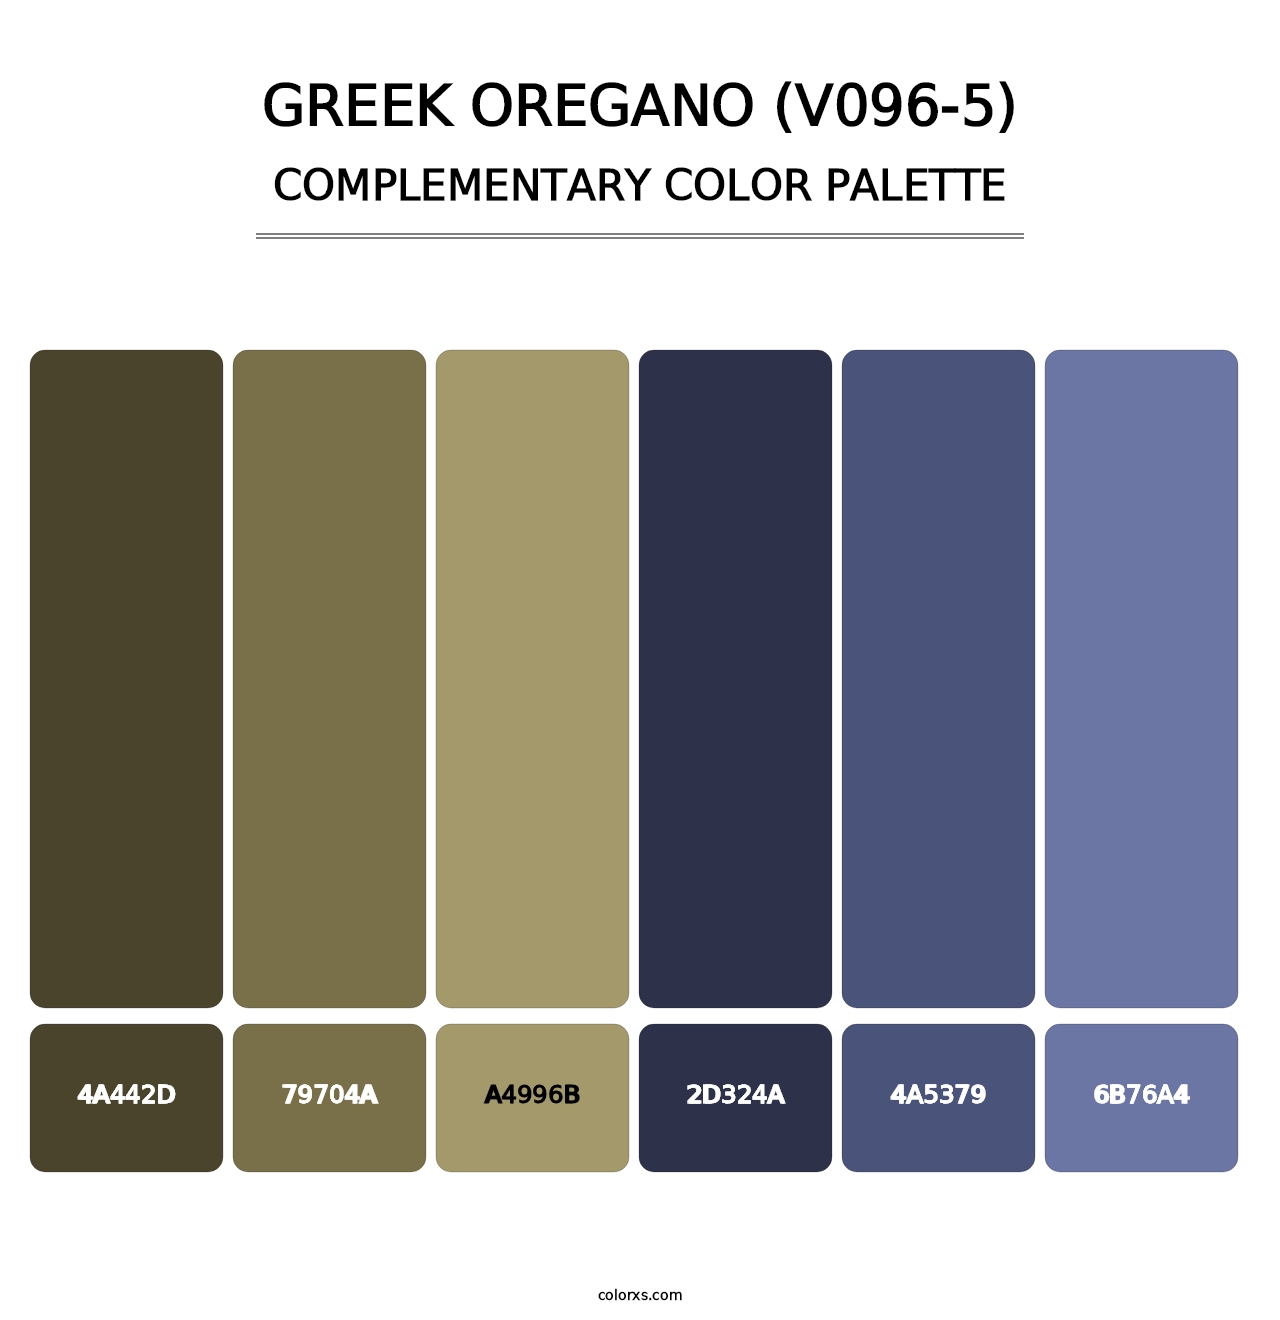 Greek Oregano (V096-5) - Complementary Color Palette